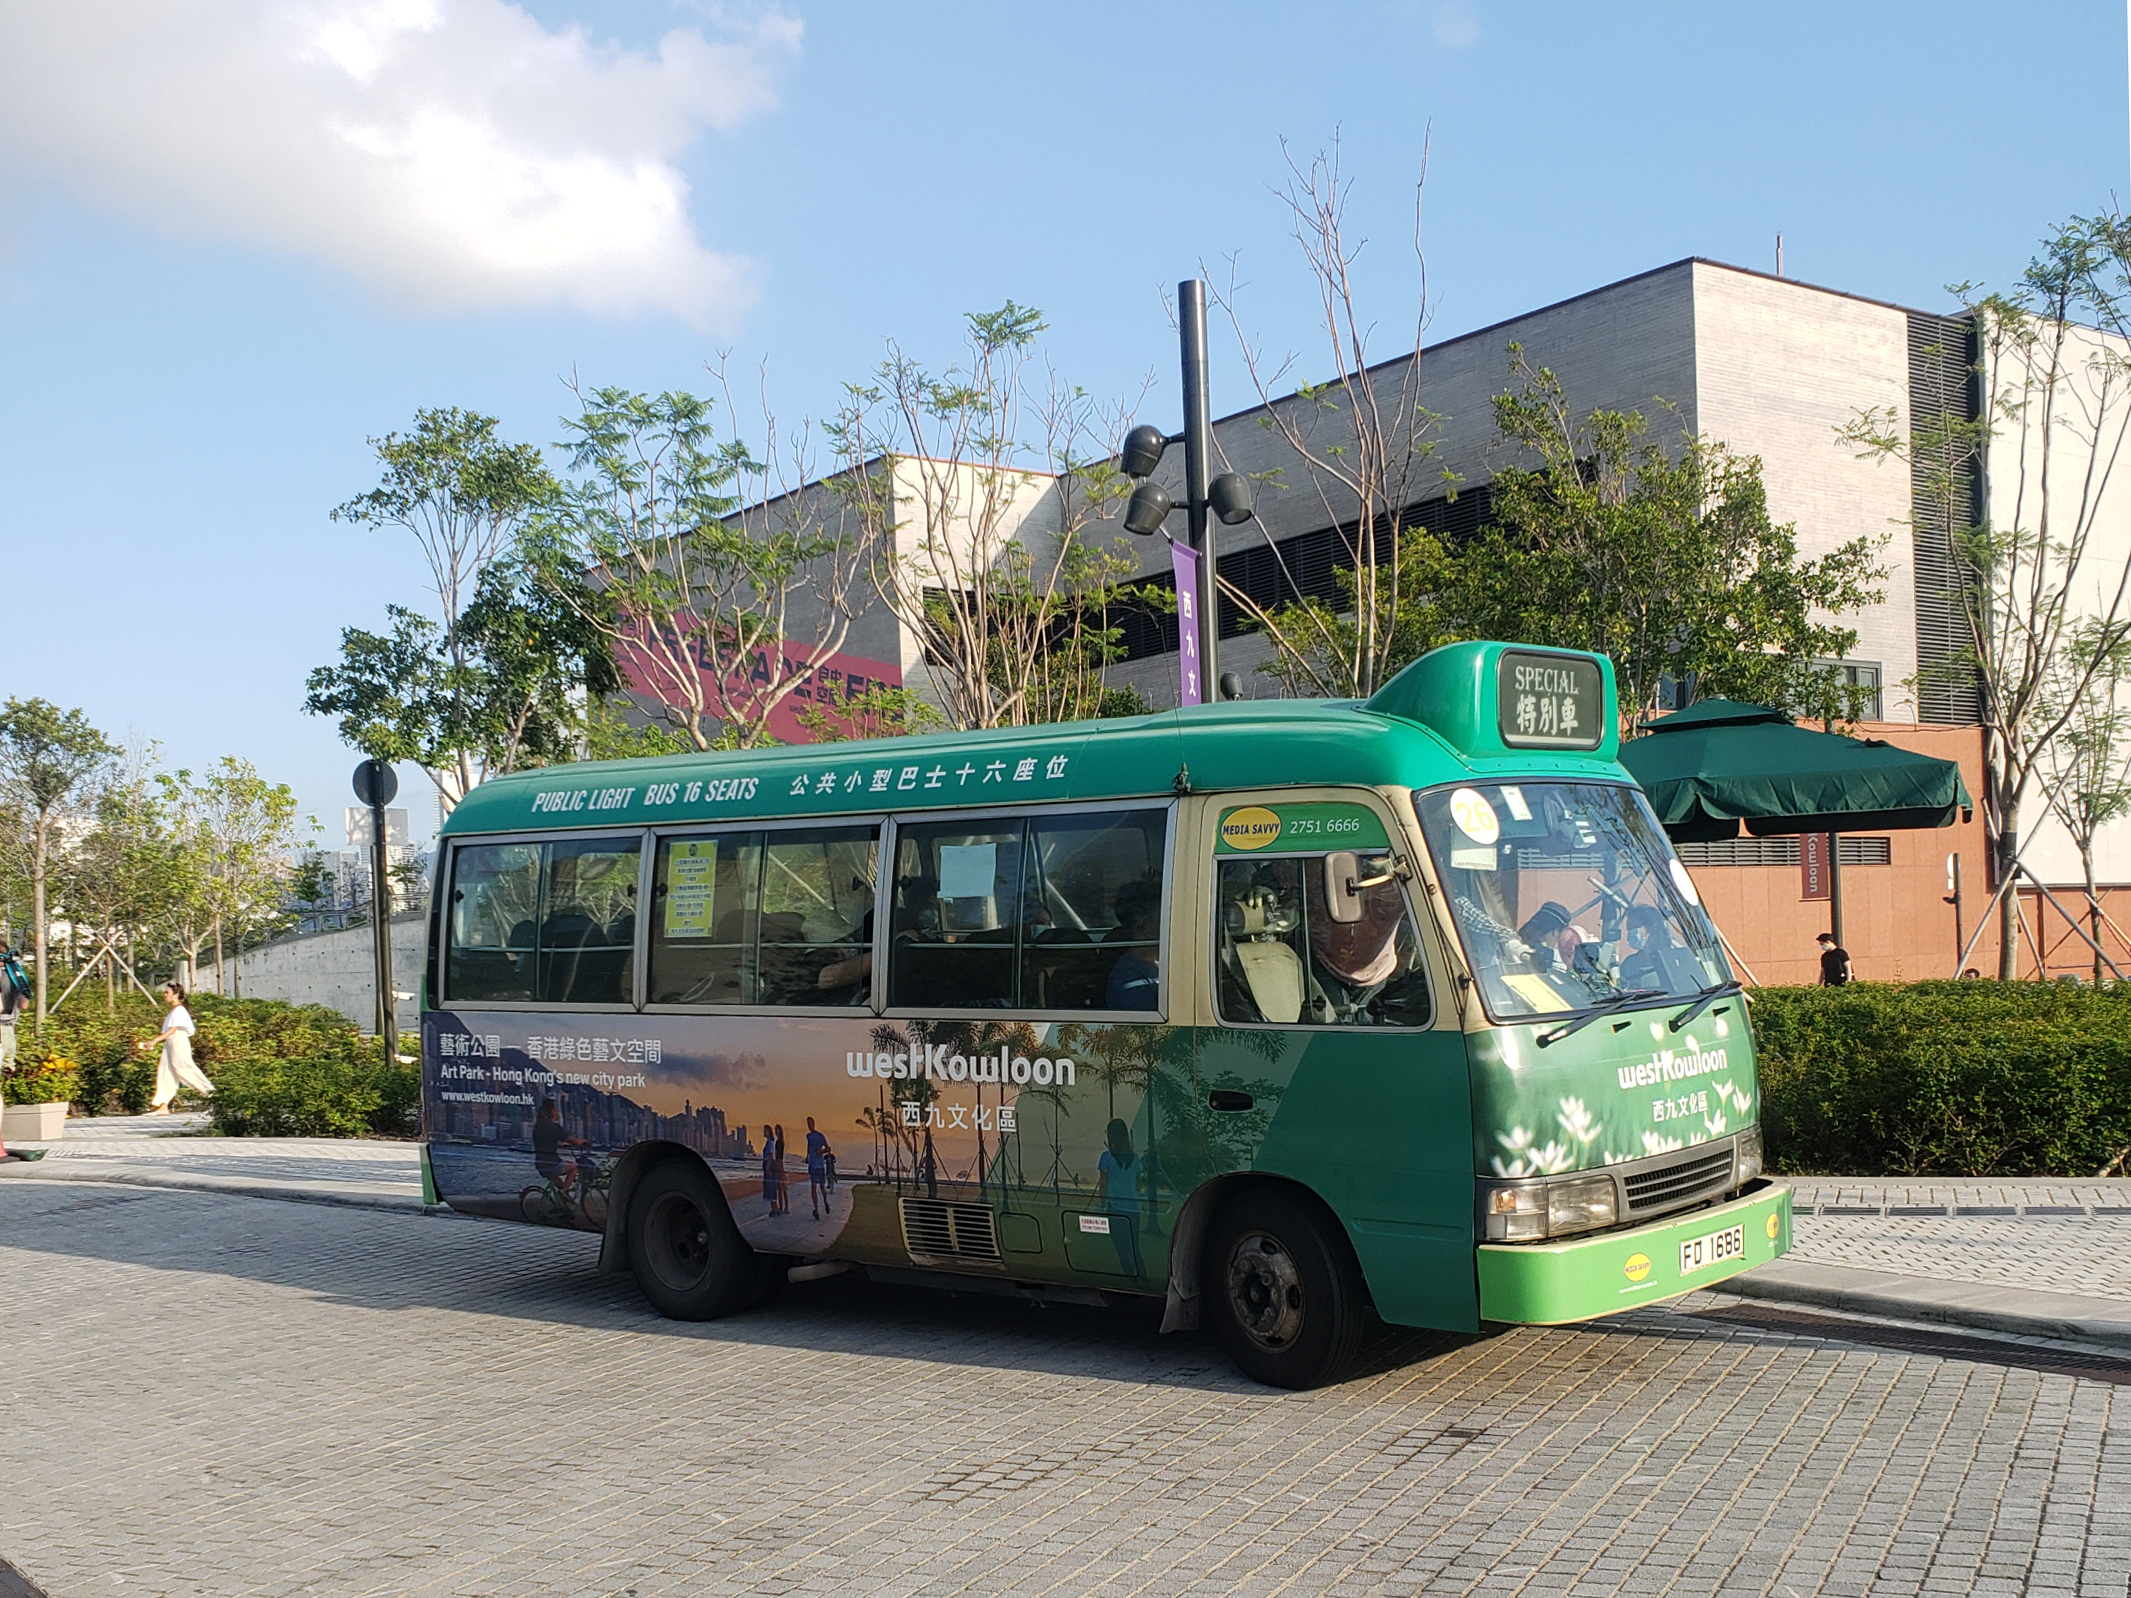  專線小巴可於數分鐘內讓市民和遊客來往於市中心和西九文化區